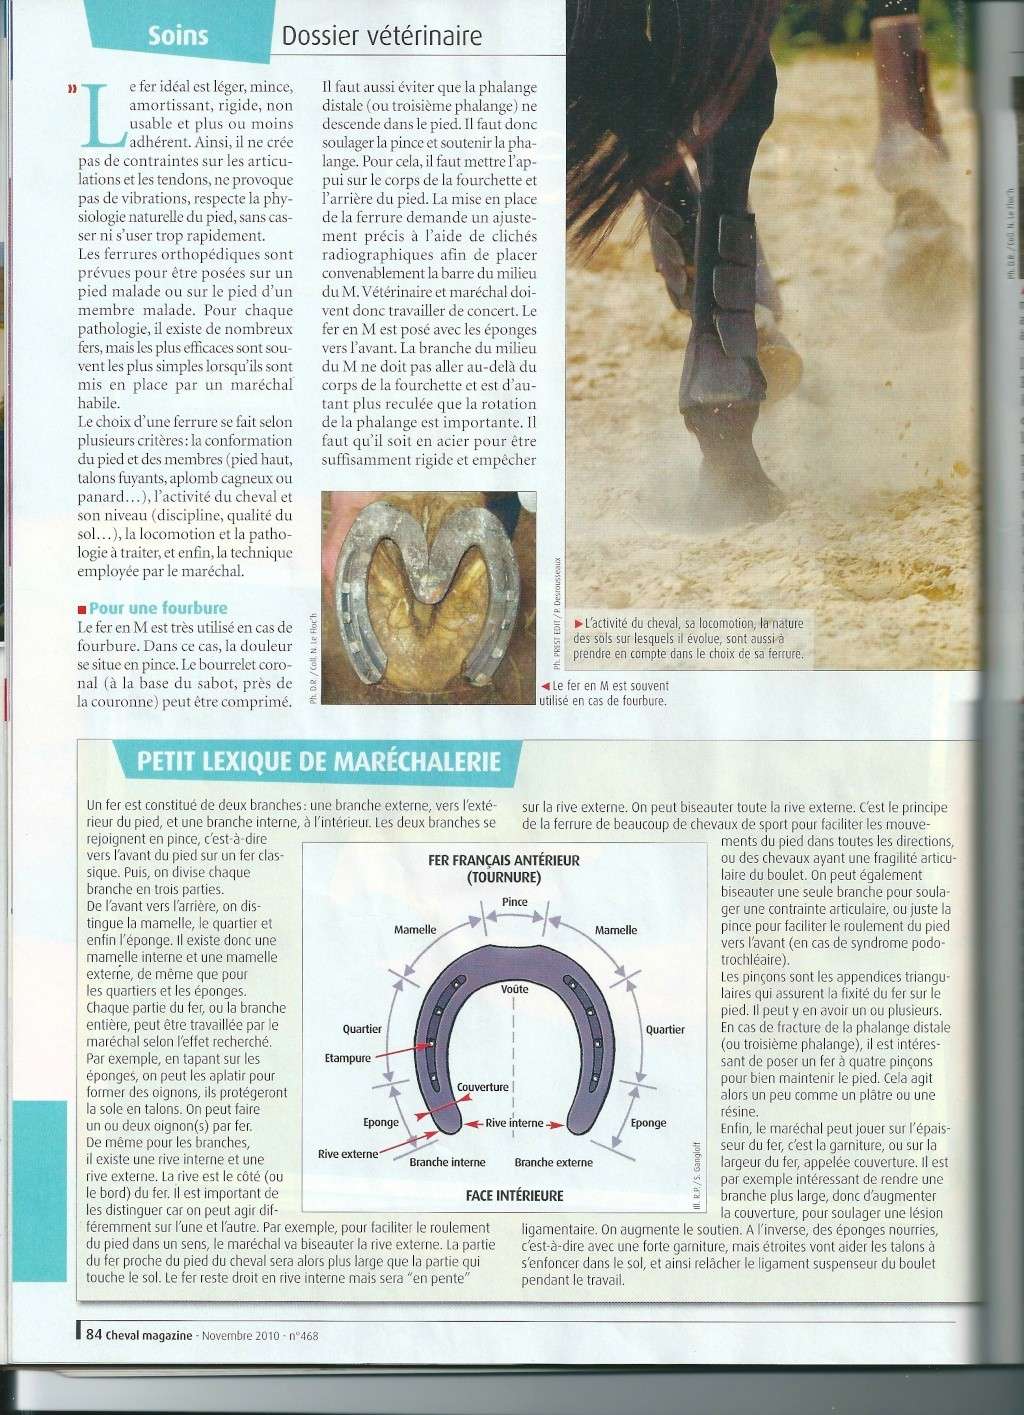 Ferrures du futur ( article cheval magazine nov. 2010 )  Scan211